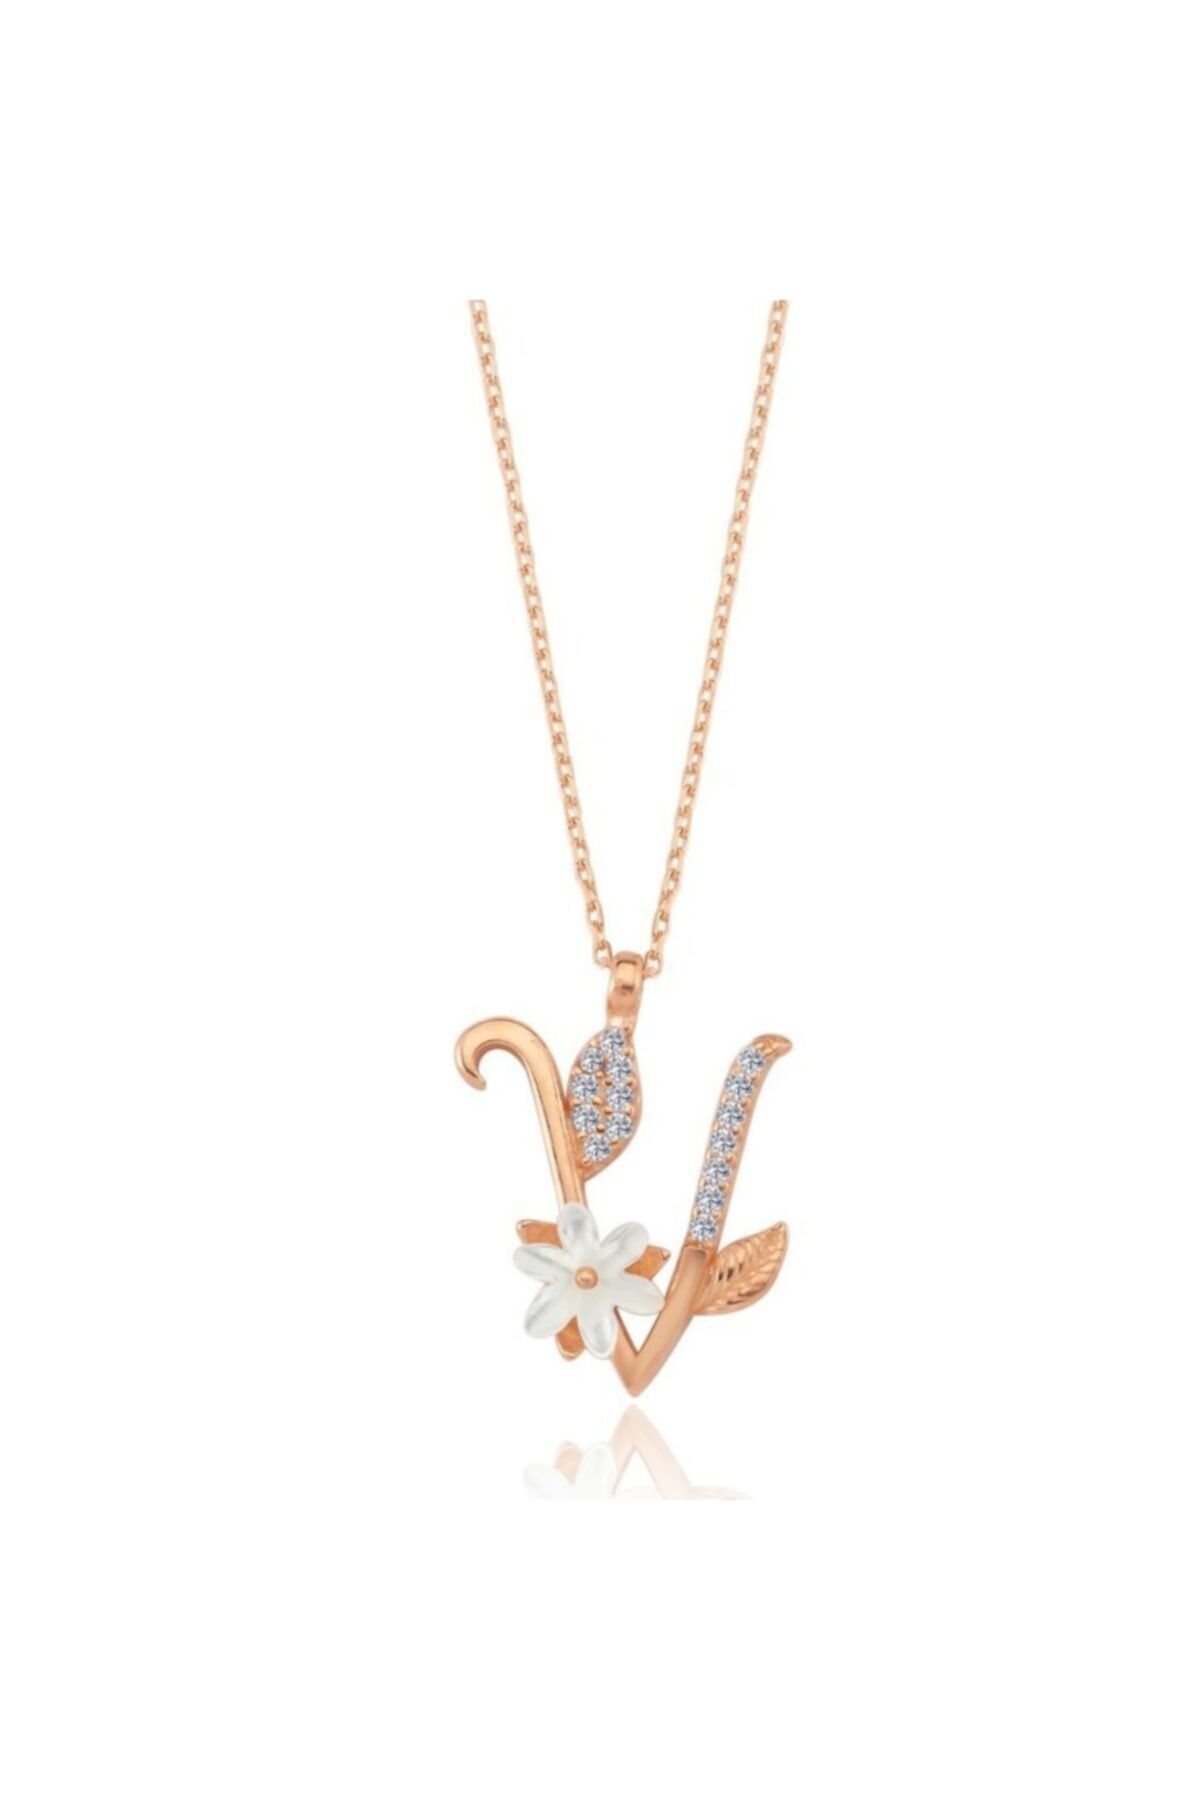 Mia Vento Işıltılı Manolya Çiçeği V Harfi Rose Renk Gümüş Harfli Kolye